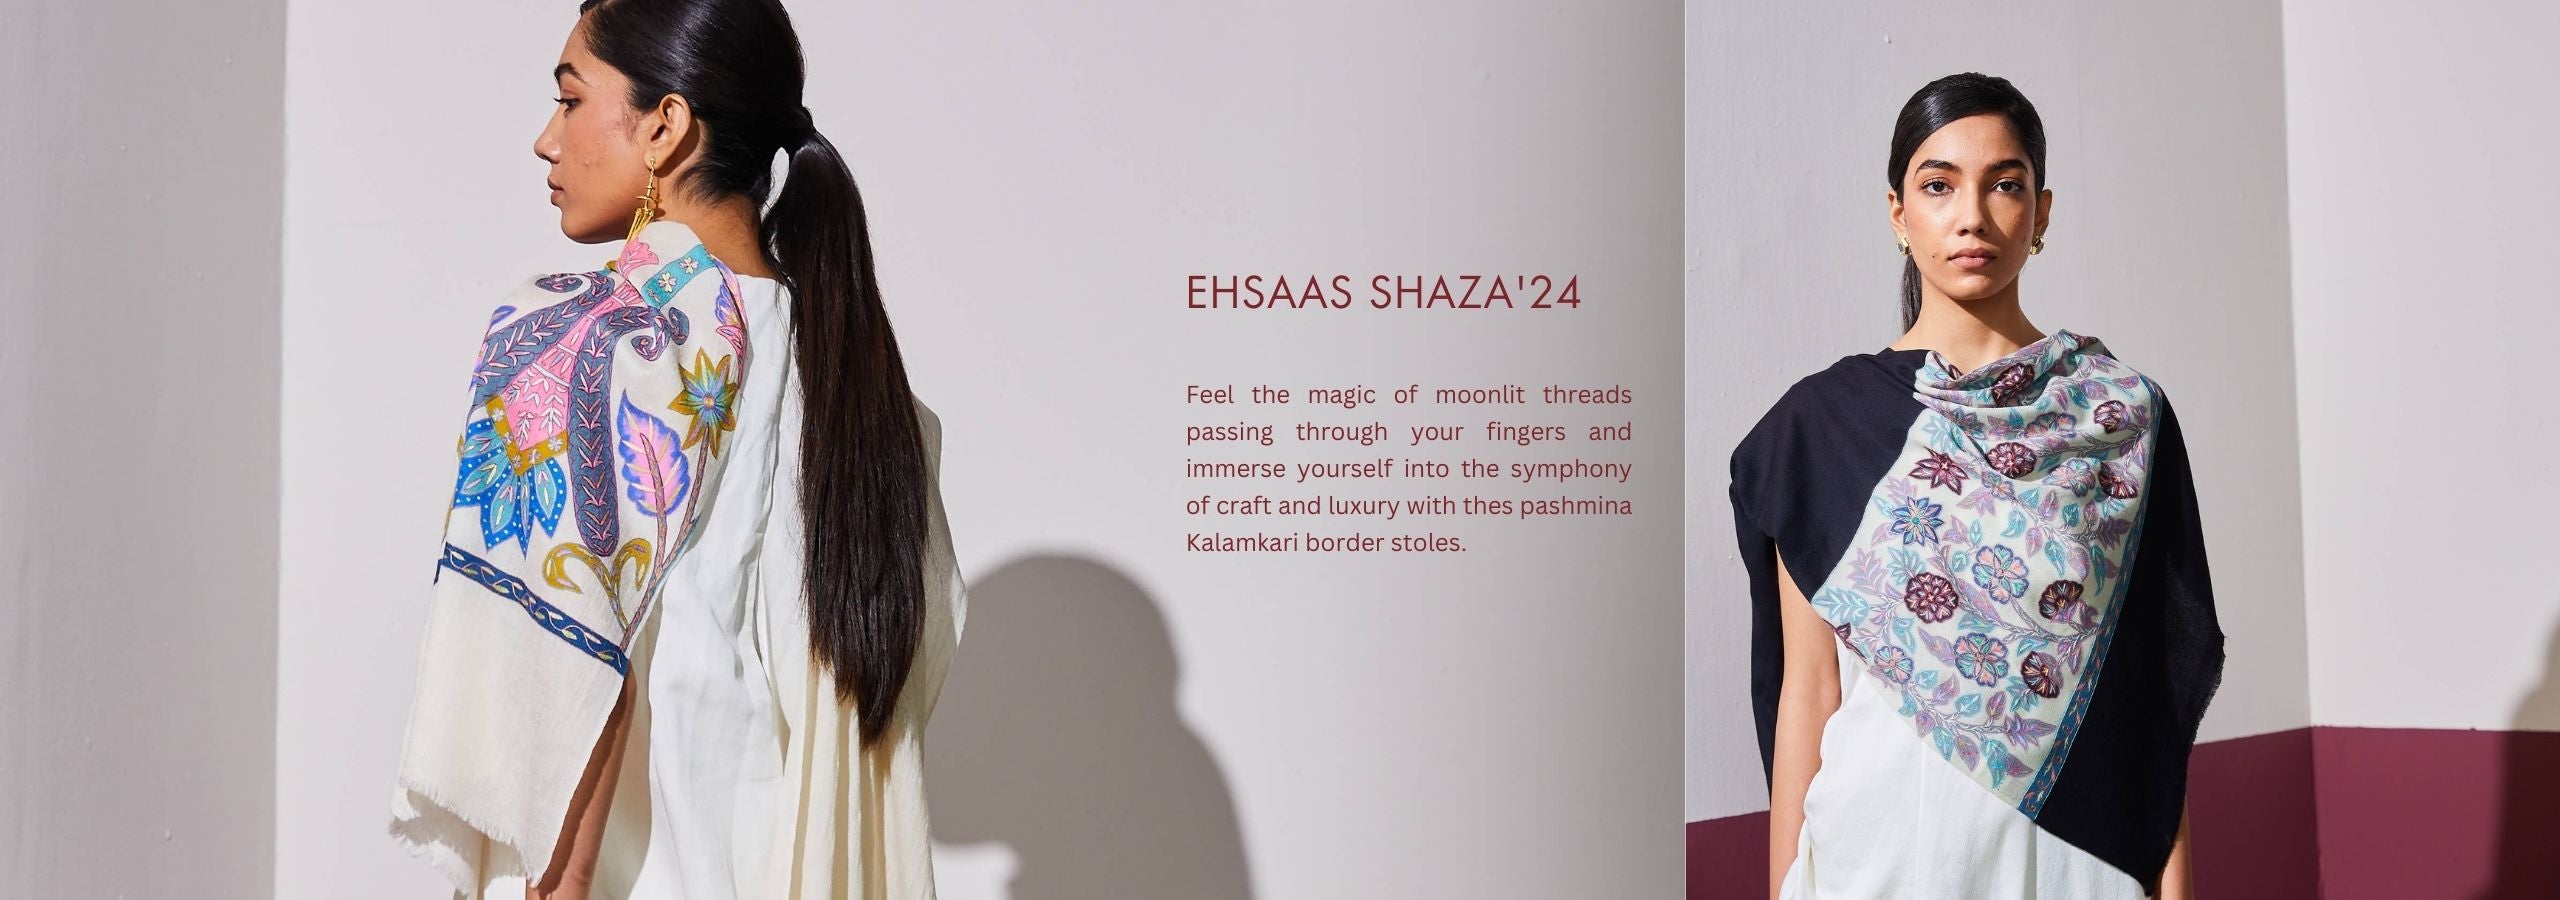 Ehsaas Shaza'24